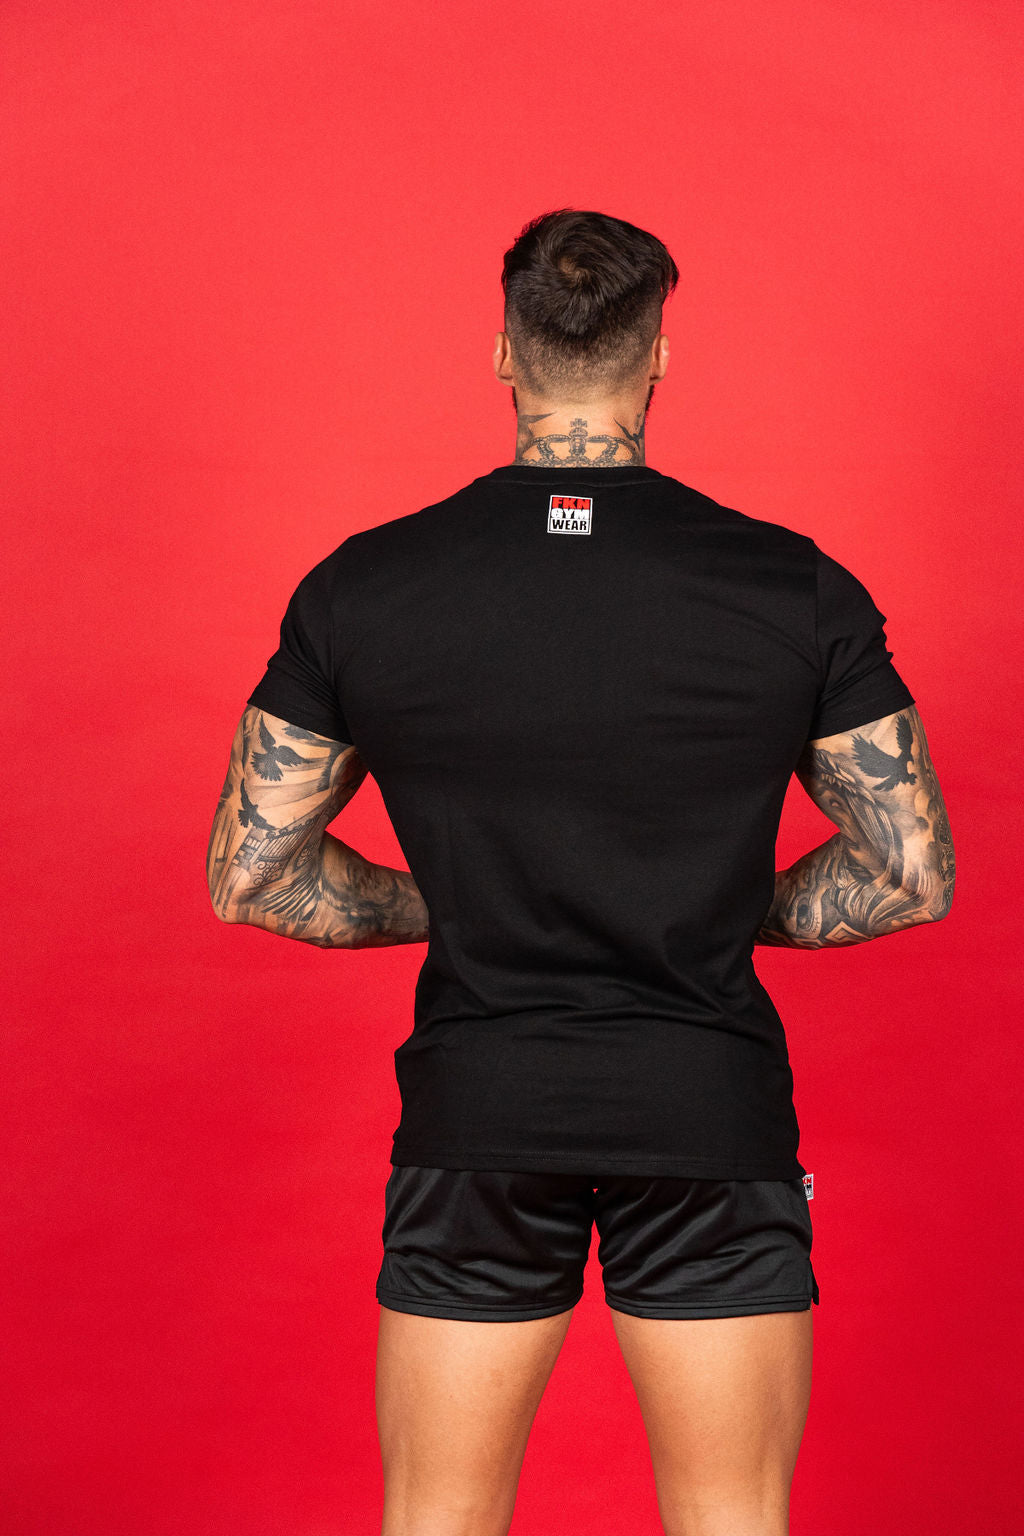 FKNBOSS | Men's Gym T-Shirt | Black